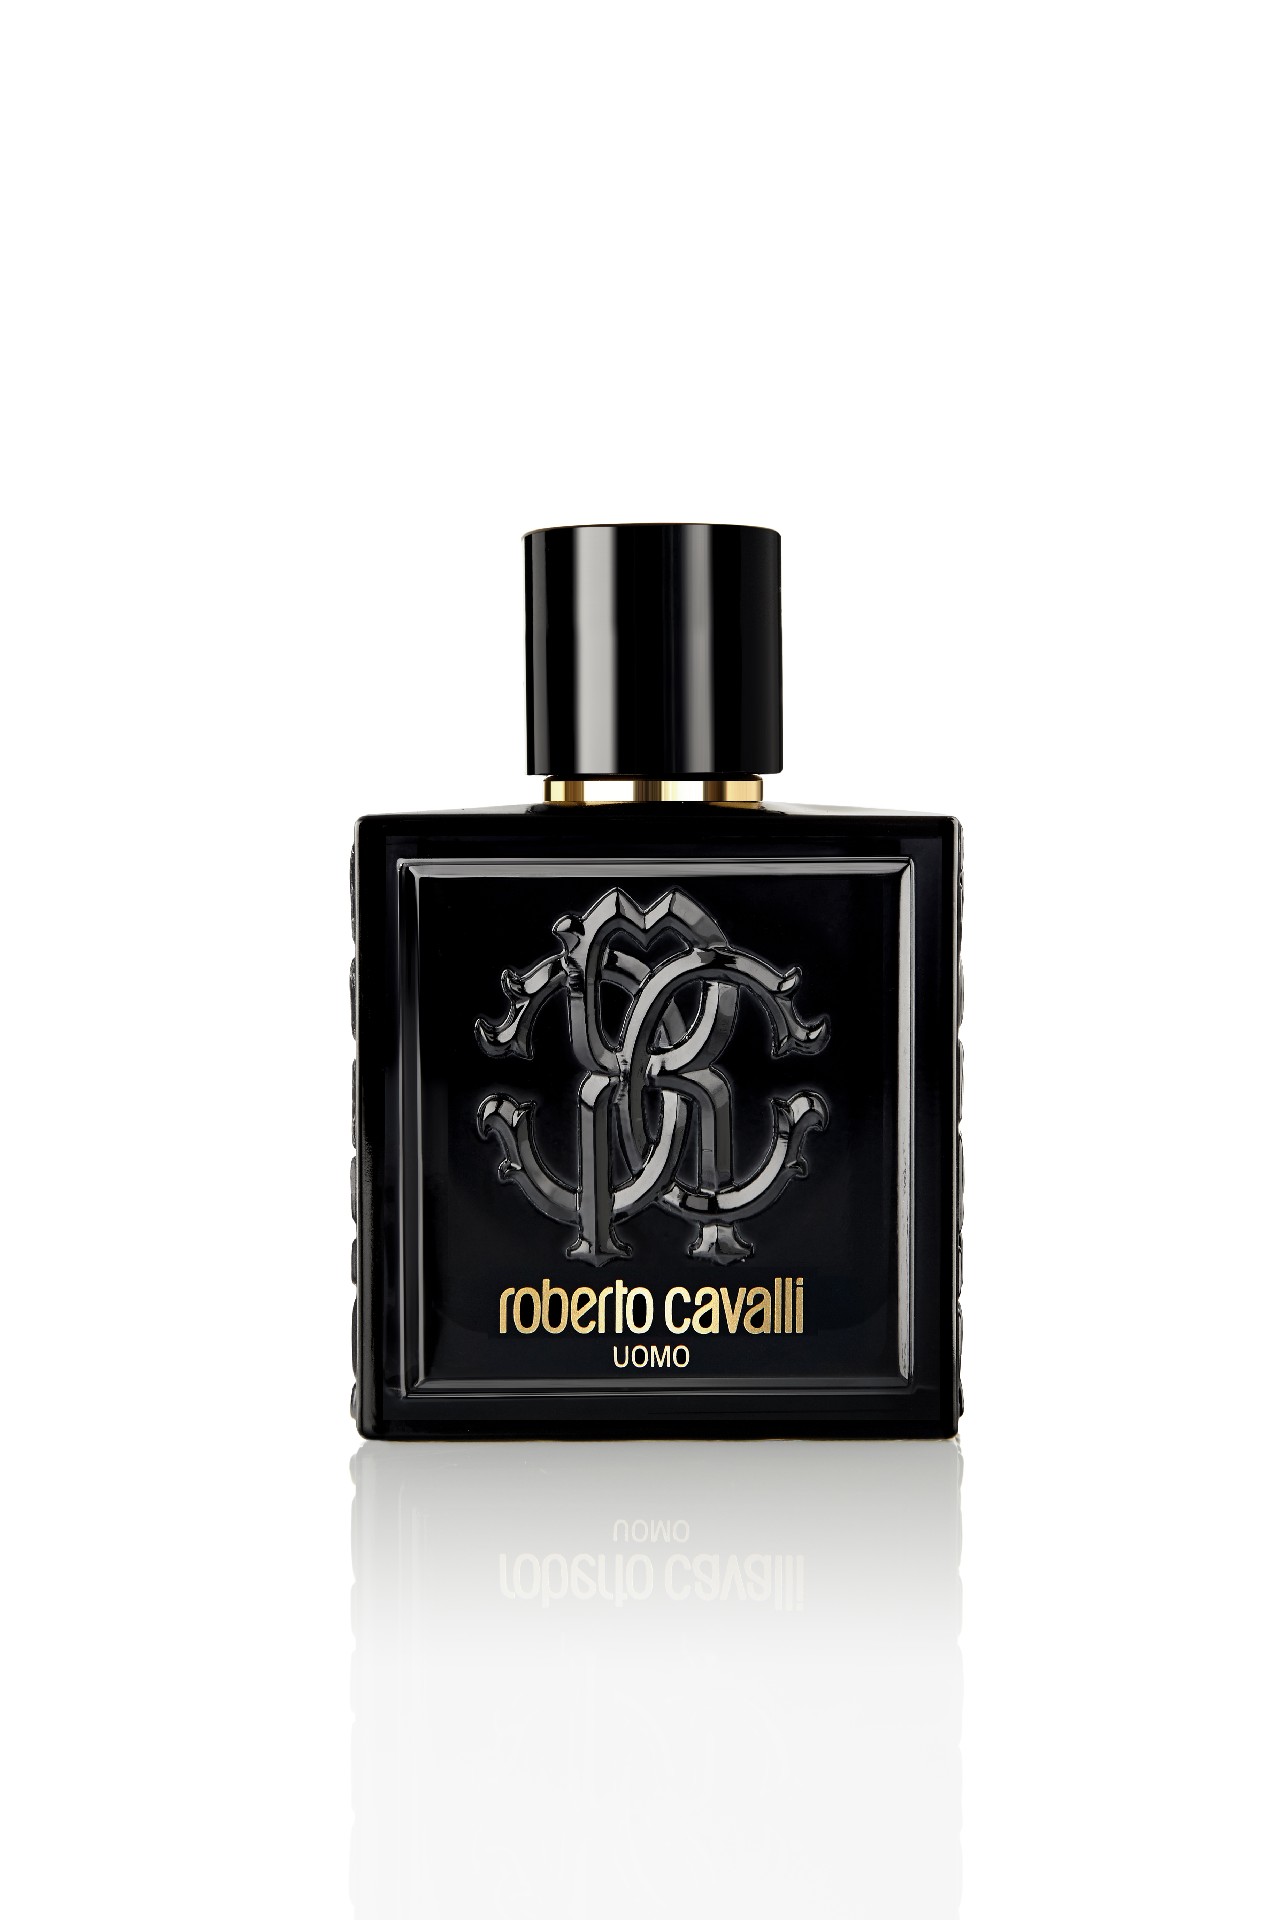 Roberto Cavalli Uomo profumo: la nuova fragranza maschile, le foto